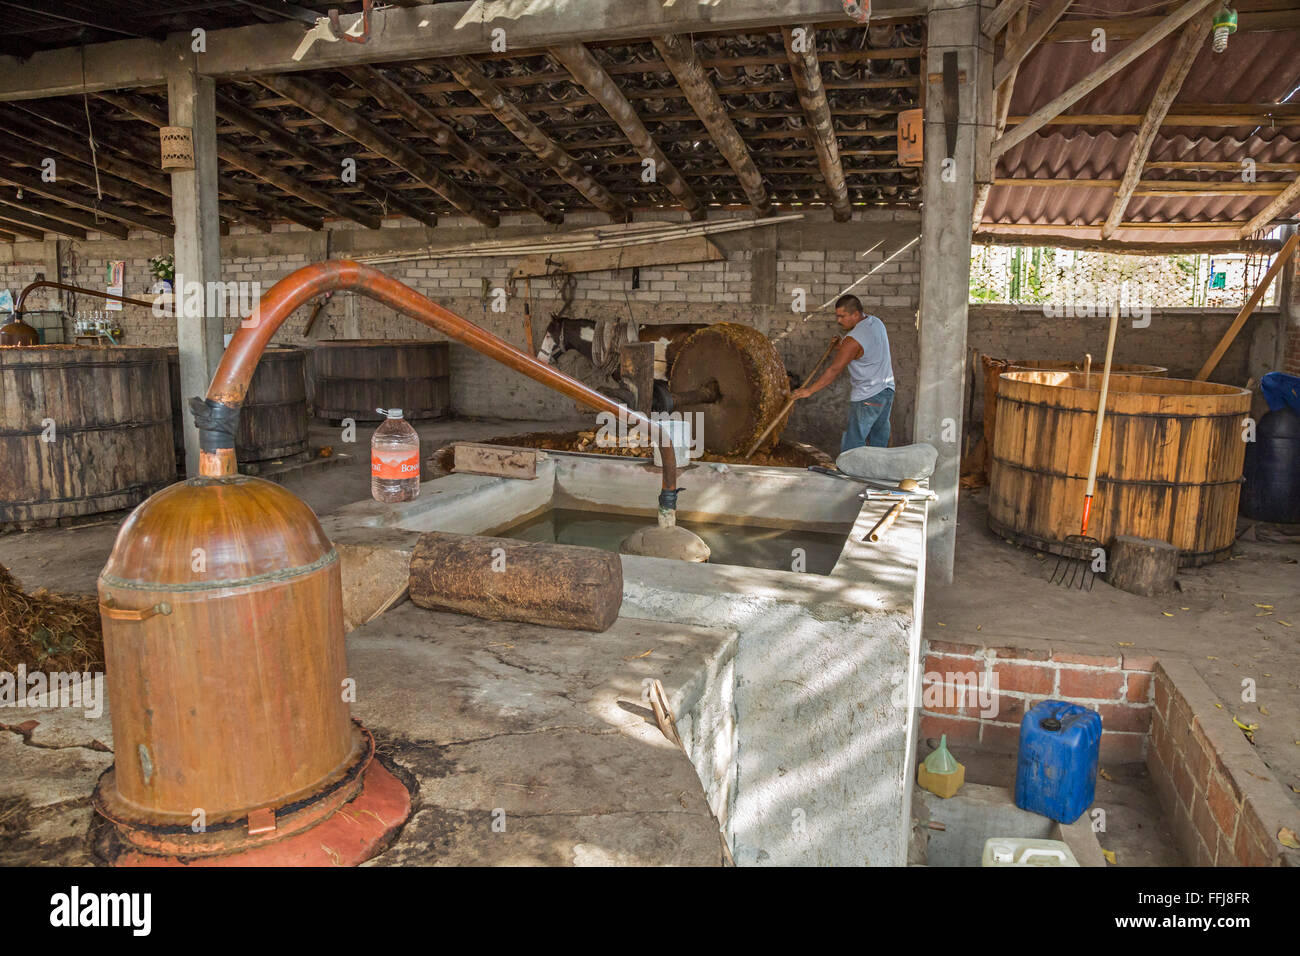 Santiago Matatlán, Oaxaca, Mexico - A copper still at a mezcal distillery. Stock Photo